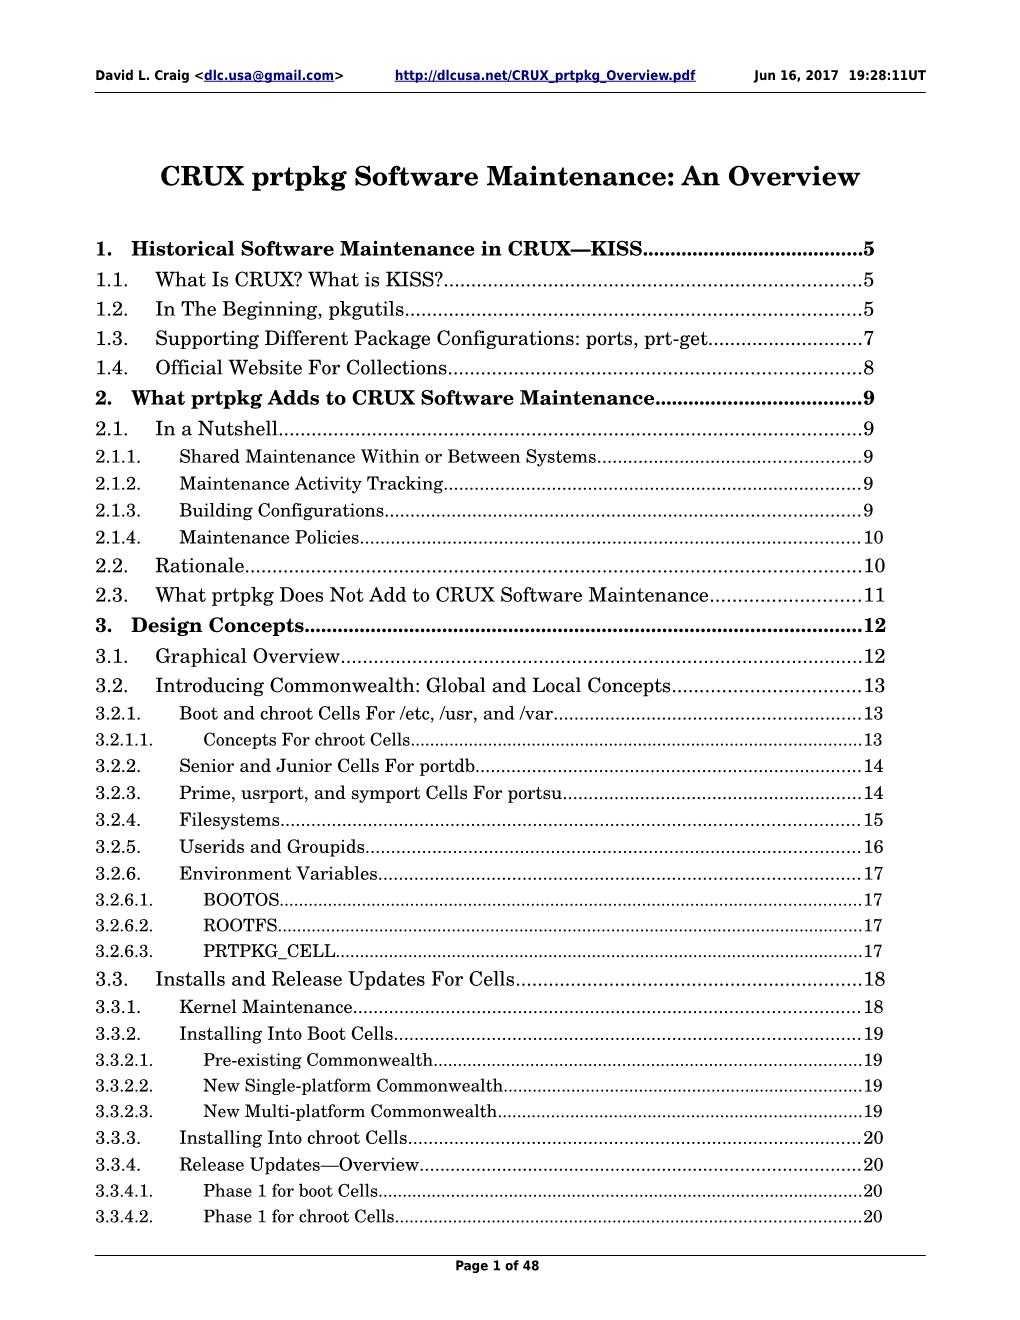 CRUX Prtpkg Software Maintenance--An Overview Jun 16, 2017 19:28:11UT